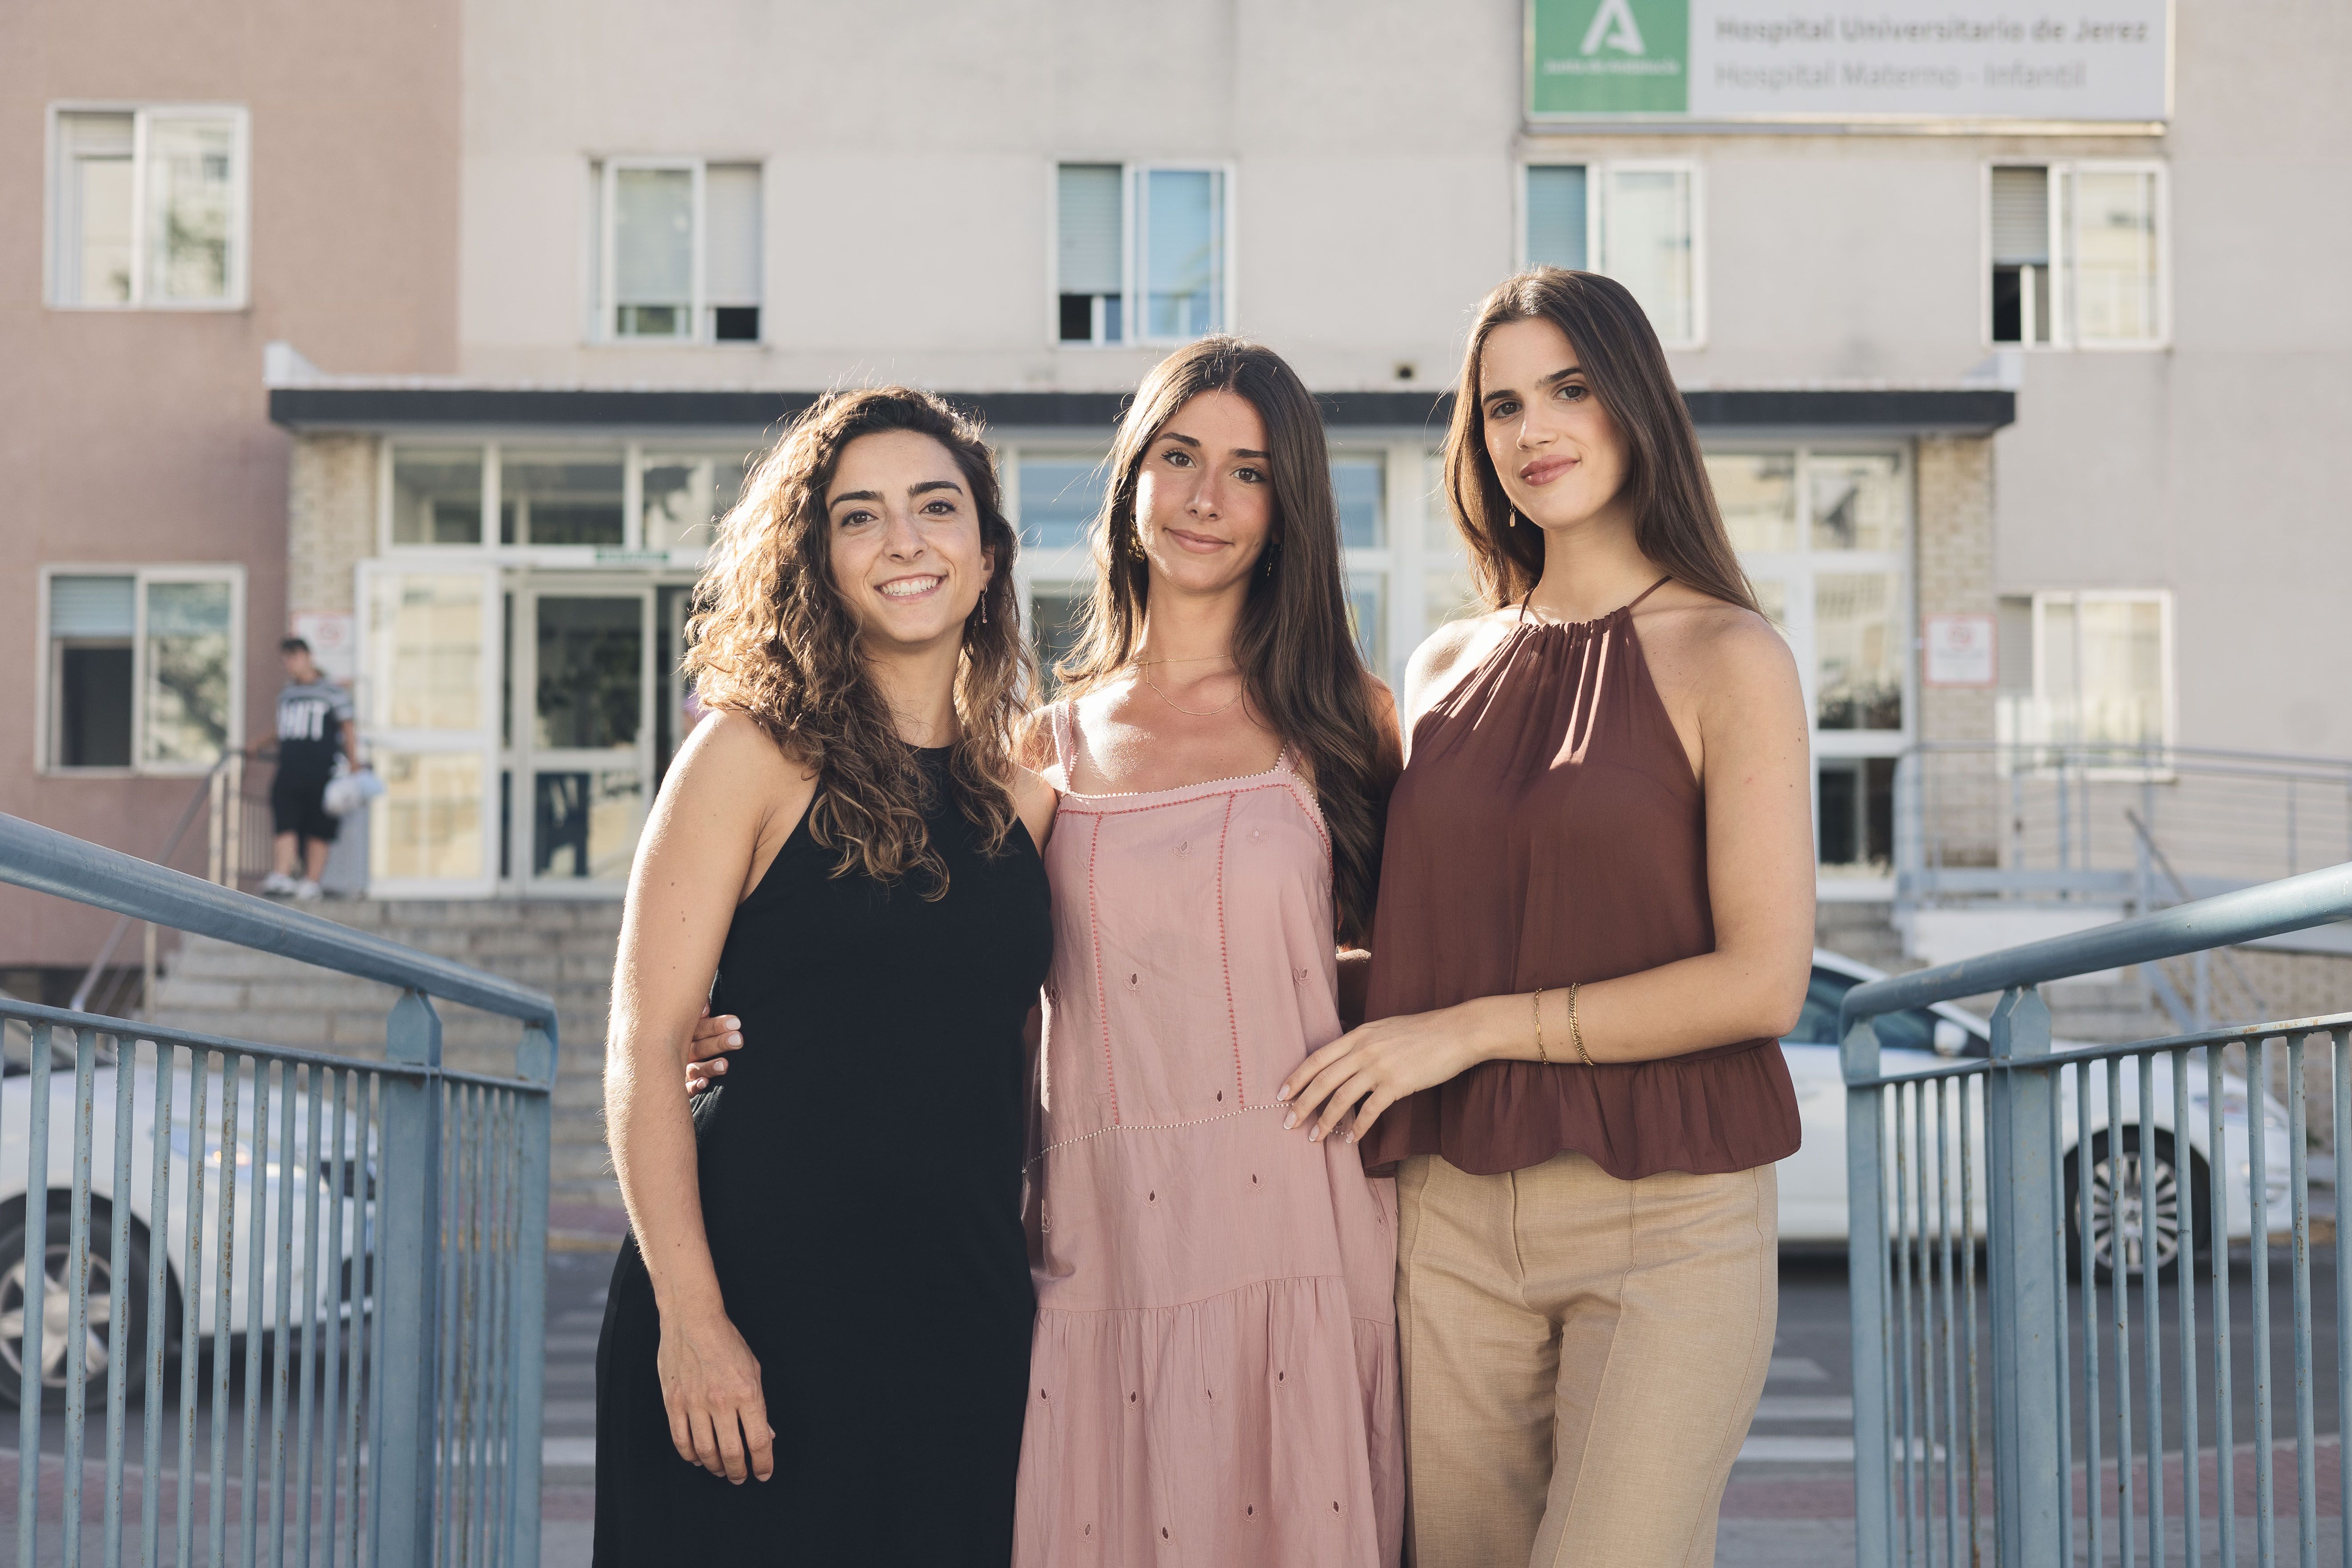 Amelia Vázquez, Nuria Laherrán y Elena Morales, futuras psiquiatras que se forman en el Hospital Universitario de Jerez.